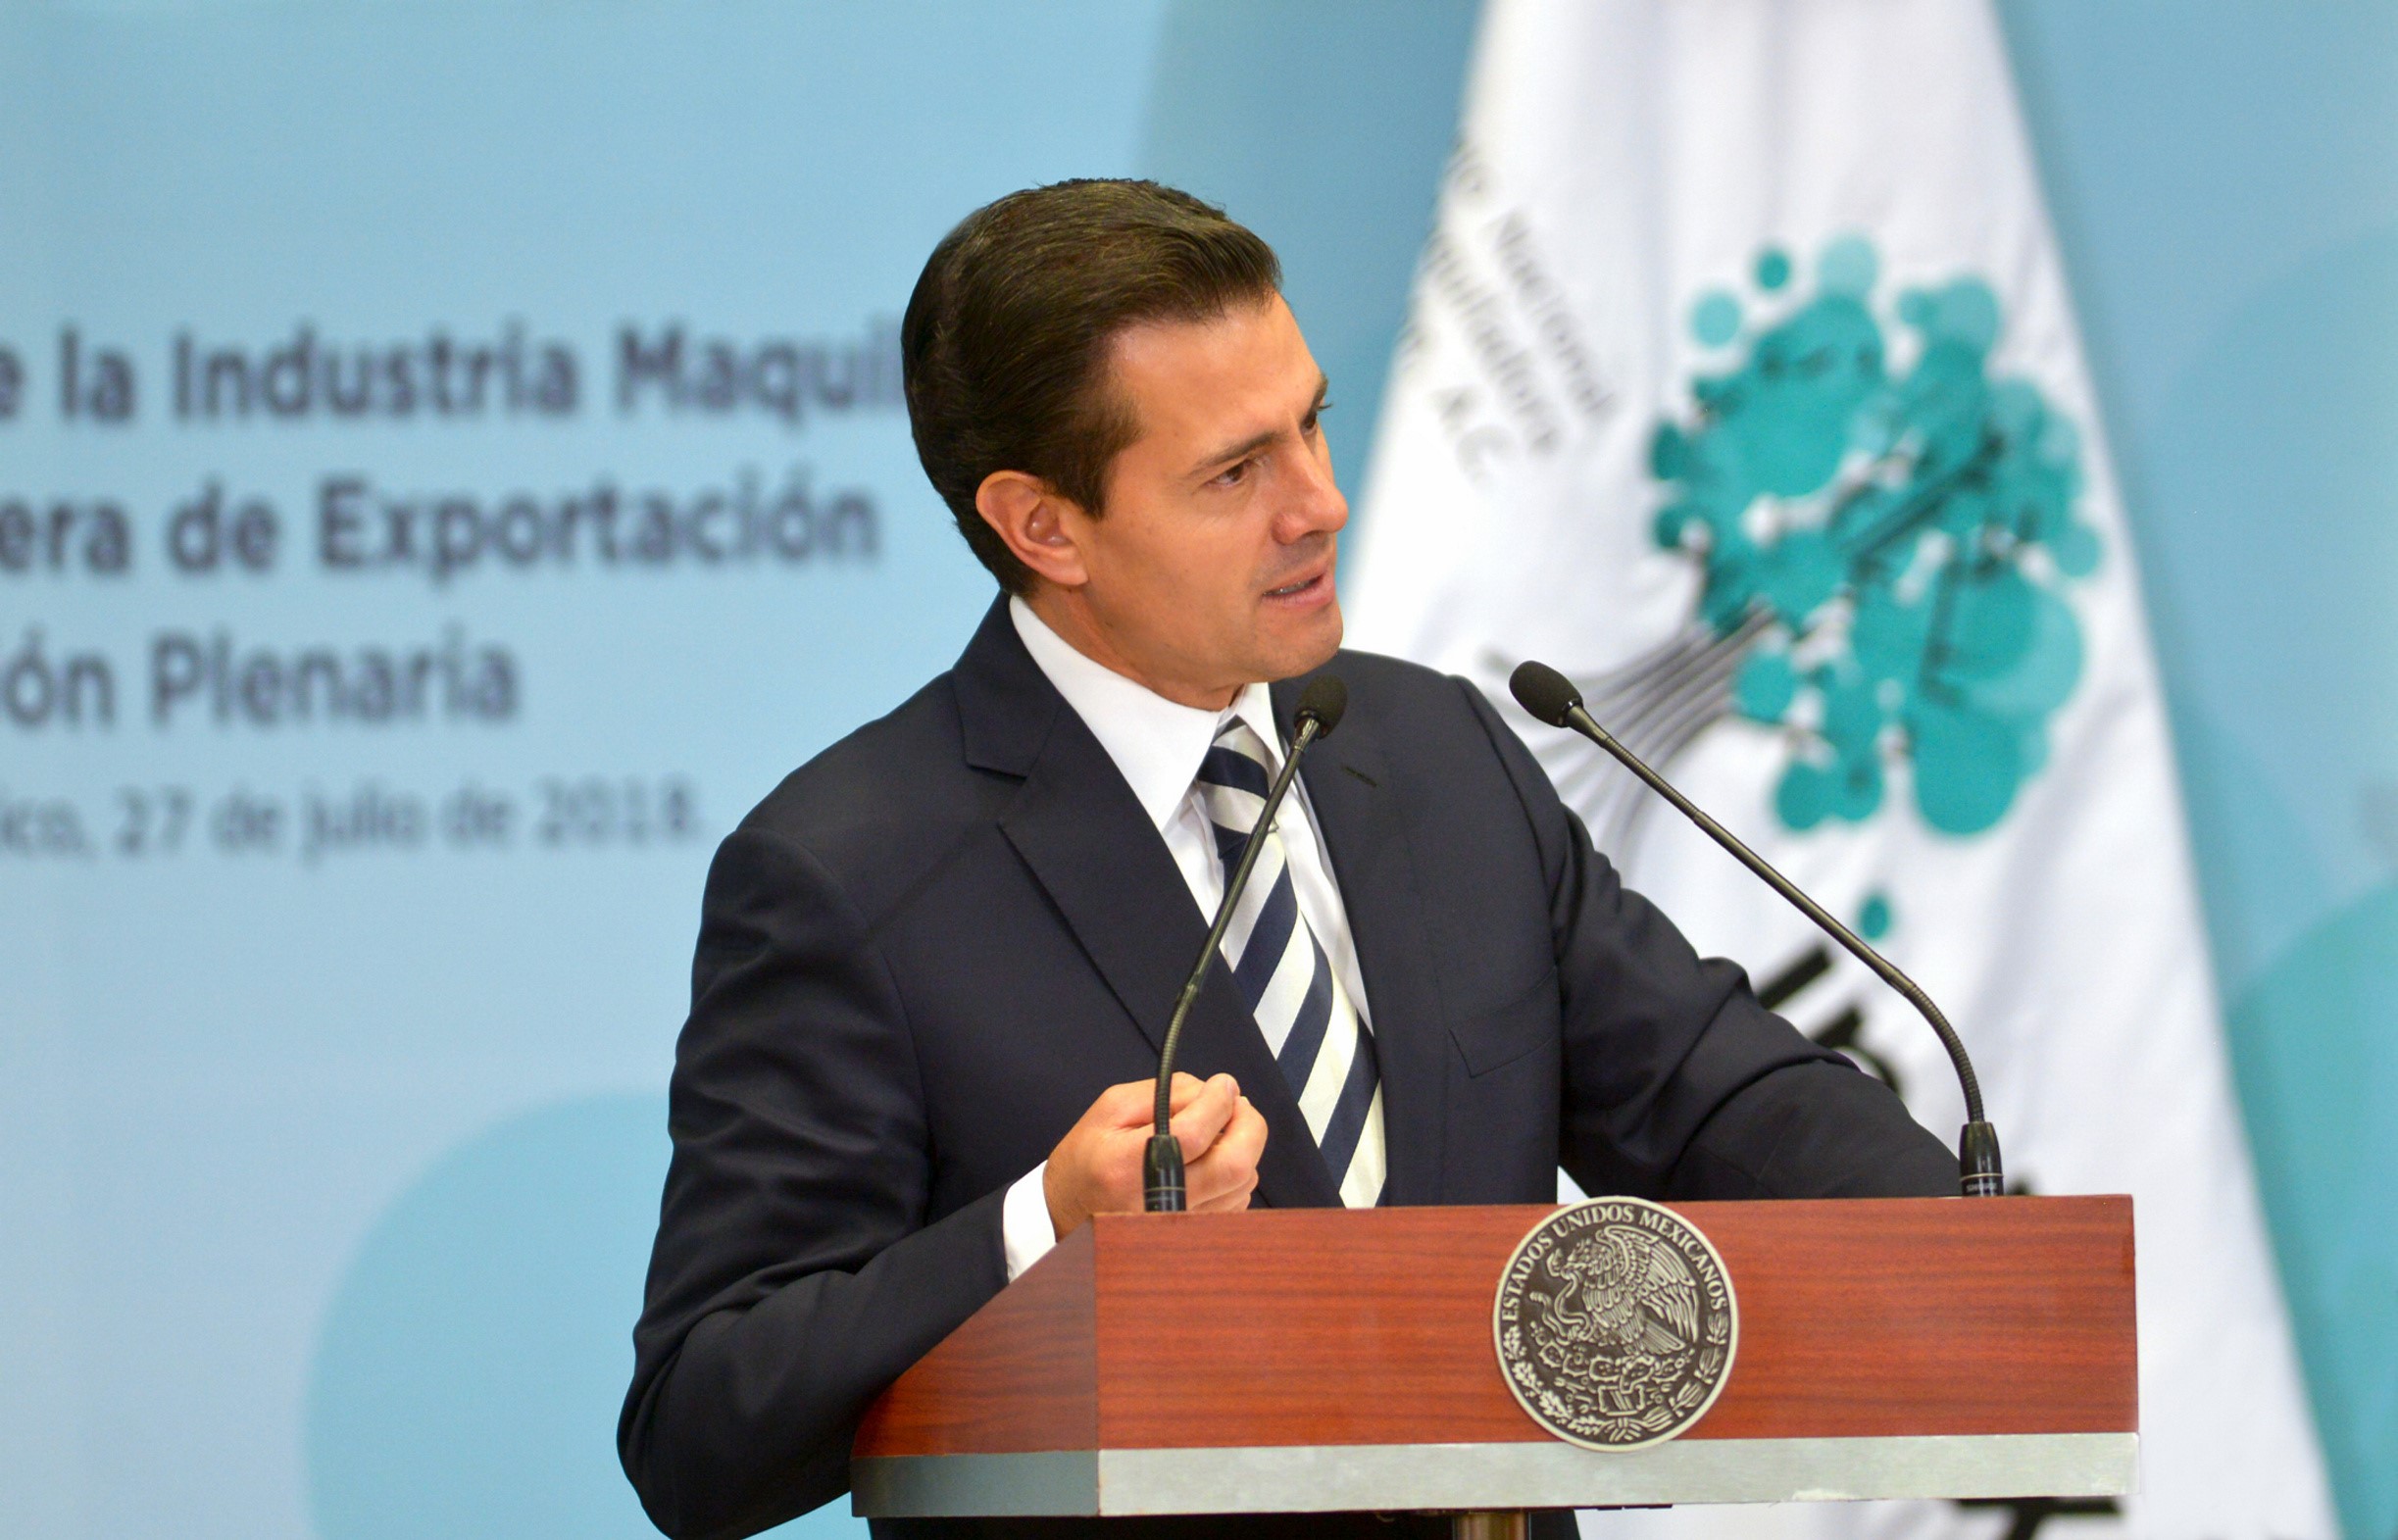 Habrá TLCAN en agosto, confía Enrique Peña Nieto